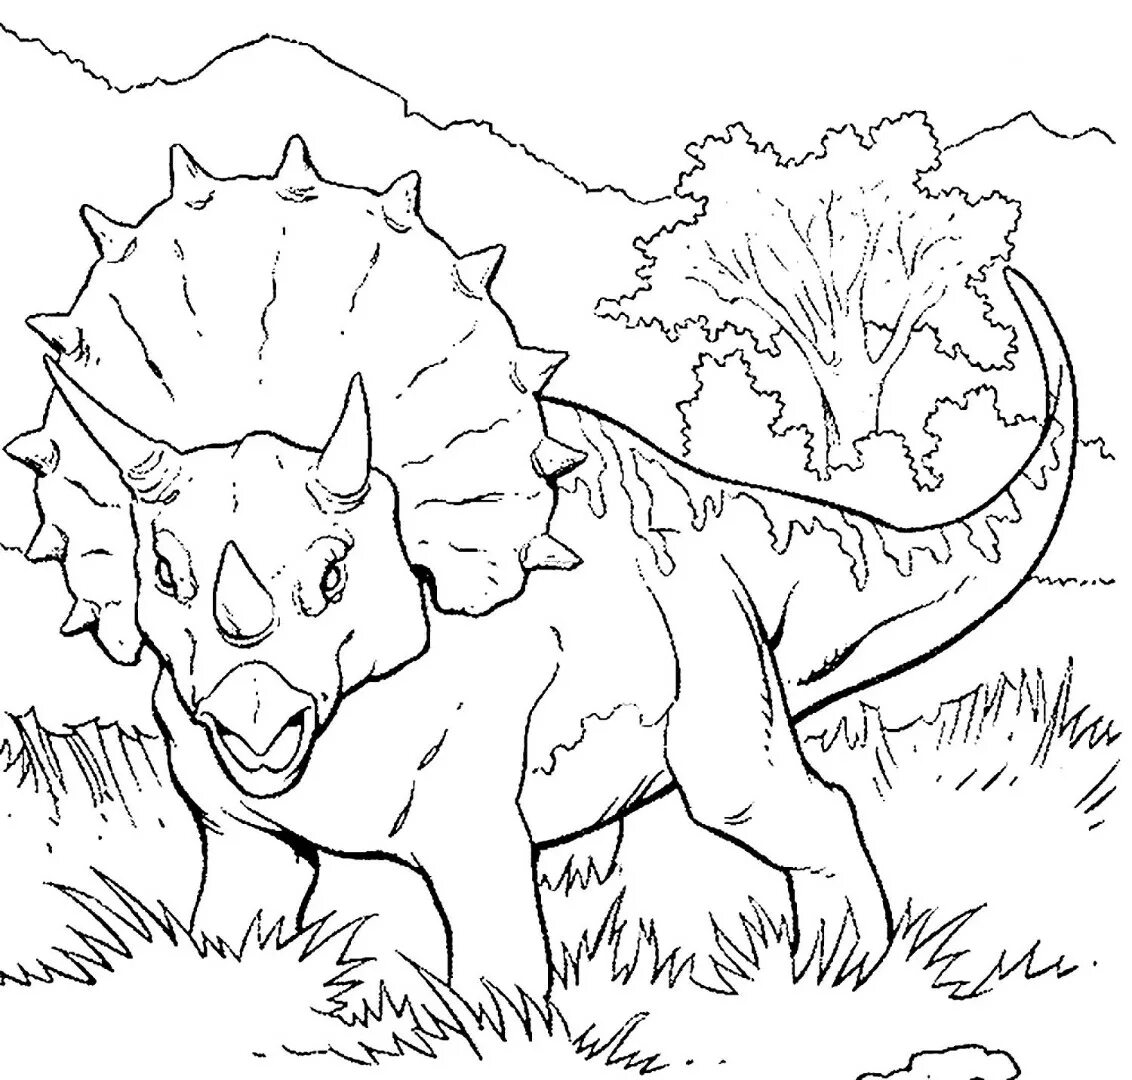 Раскраски динозавры а4. Раскраска динозавры мир Юрского периода Трицератопс. Динозавр Трицератопс раскраска для детей. Трицератопс парк Юрского периода. Динозавр раскраска для детей мир Юрского периода.